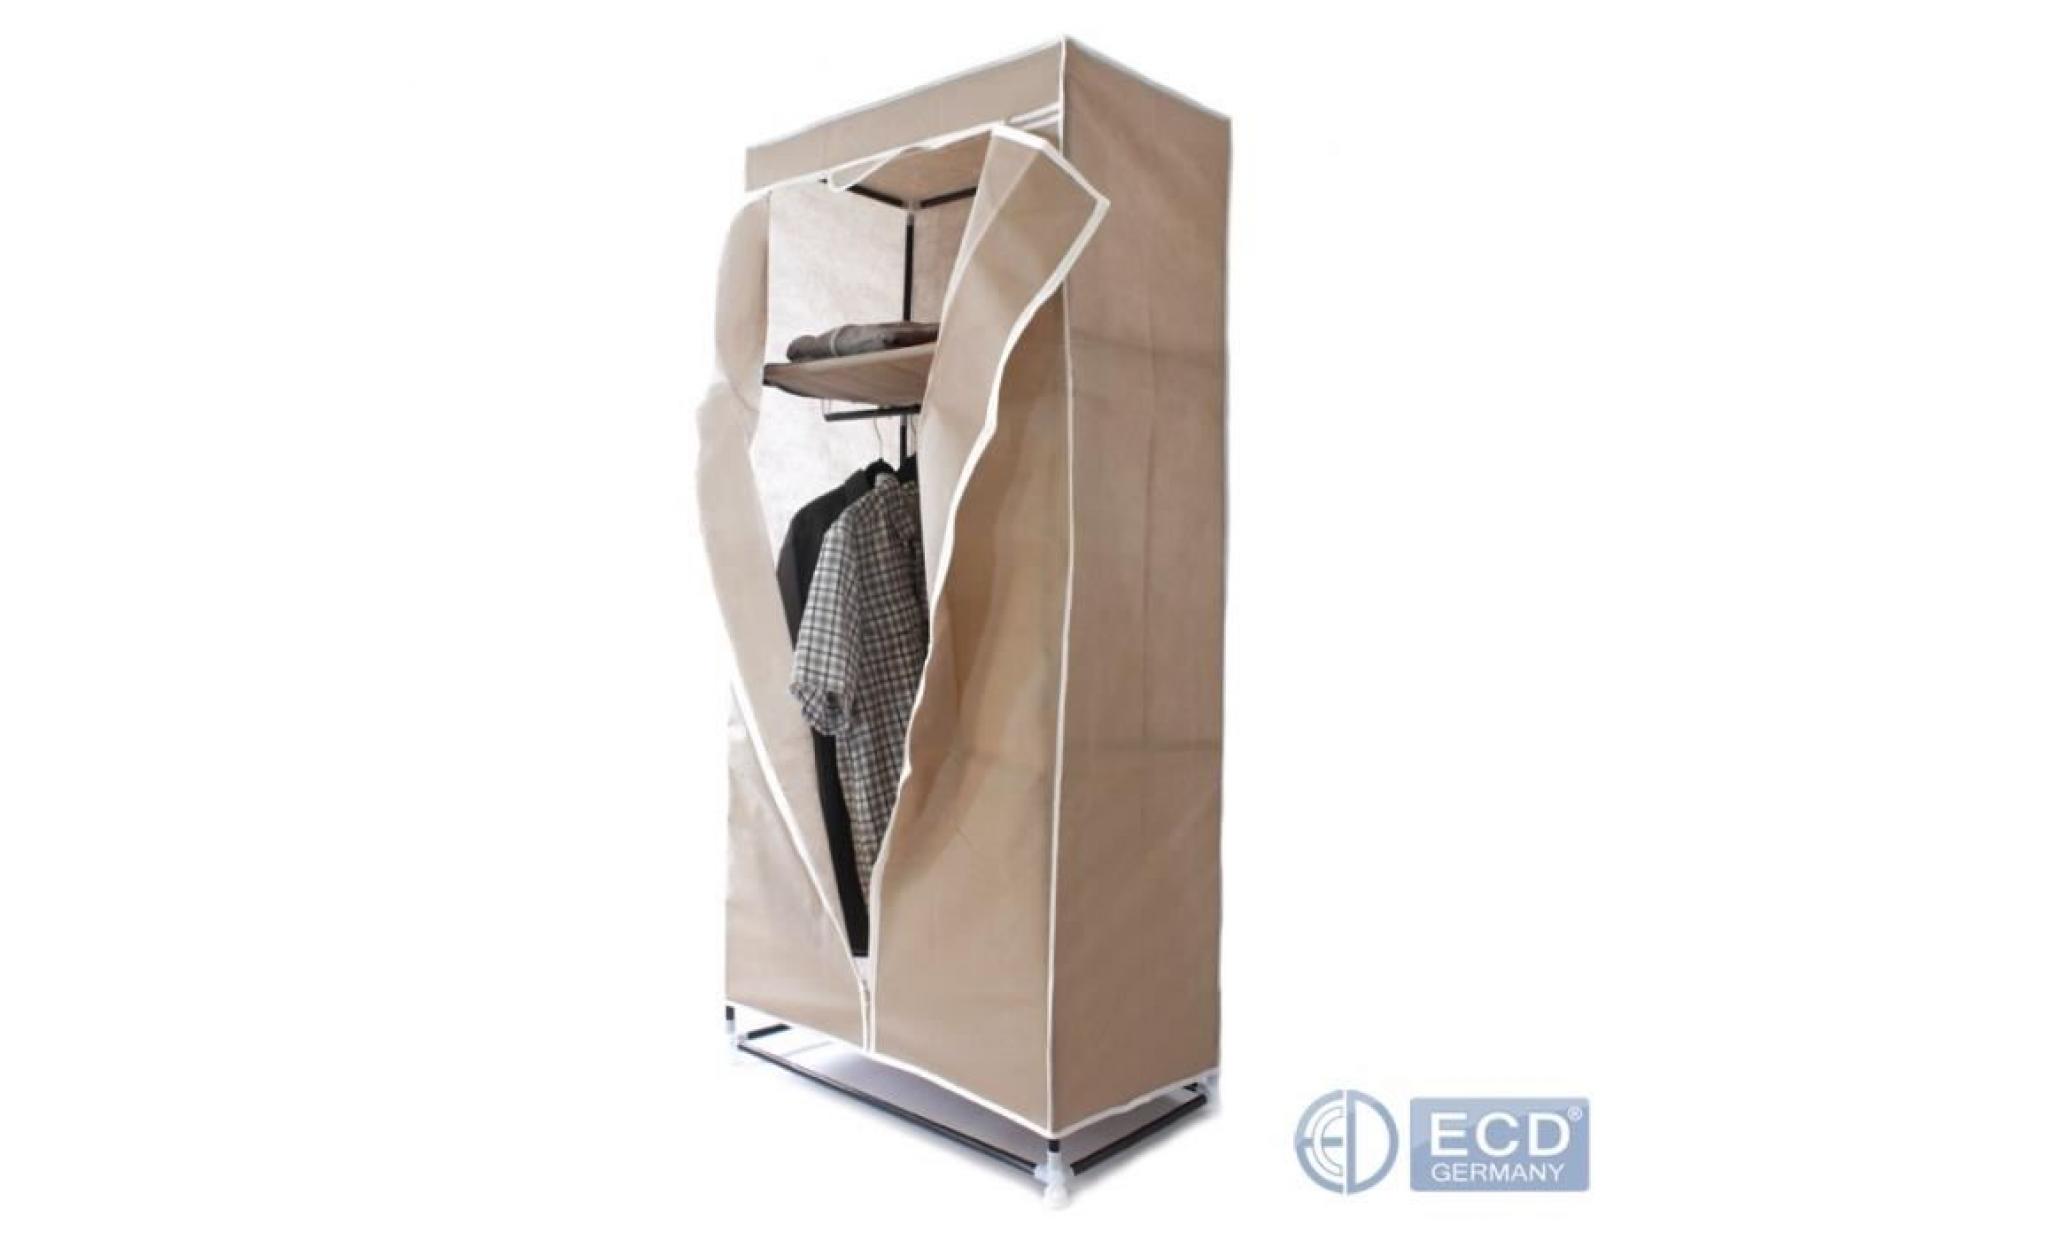 ecd germany armoire pliable en tissu 75 x 50 x 160 cm armoire avec fermeture éclair marron